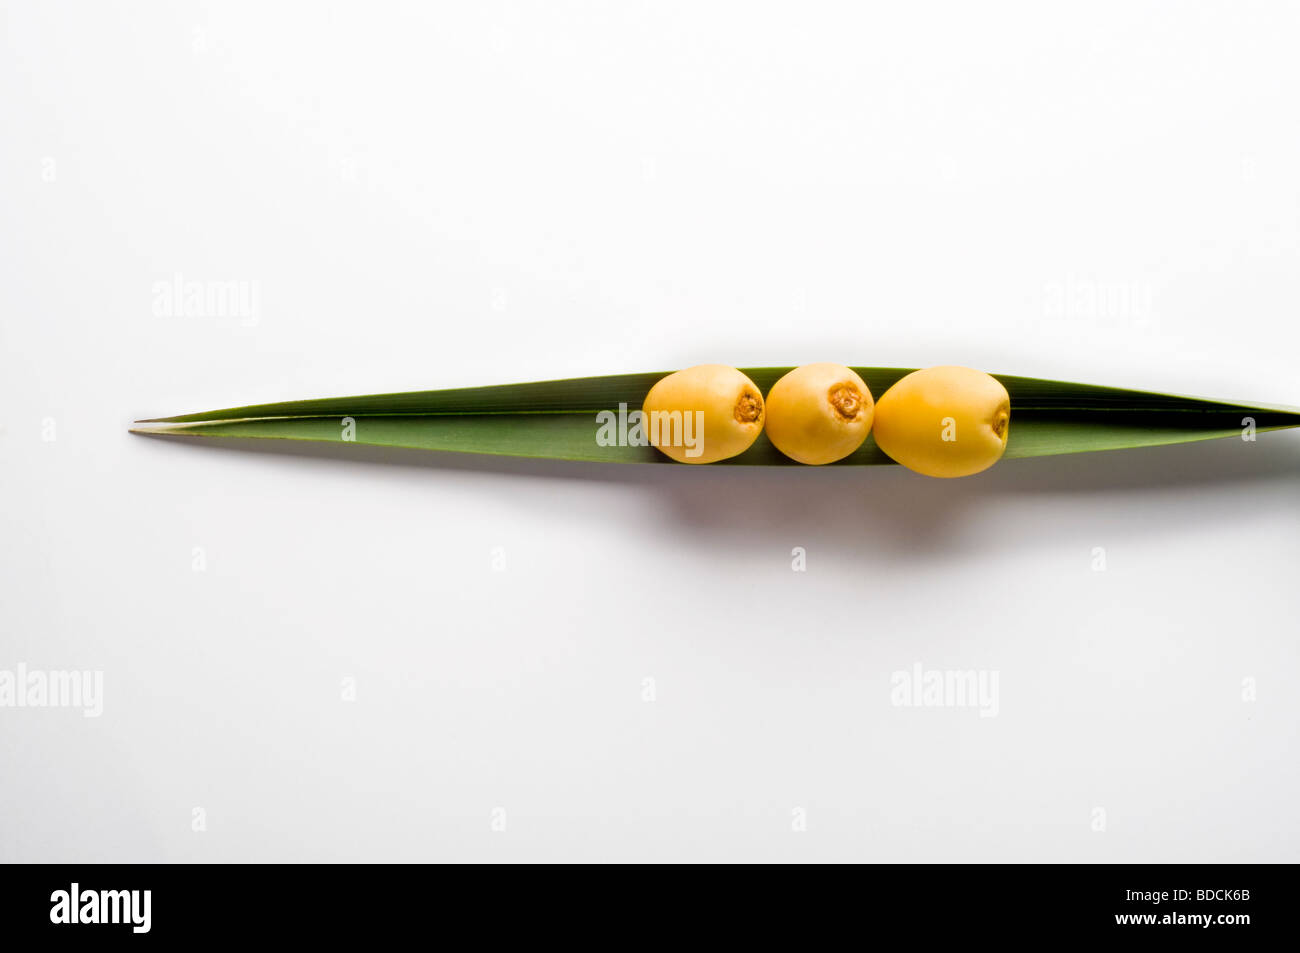 Drei rohe, gelbe Daten auf einer einzigen Palmblatt gelegt. Stockfoto